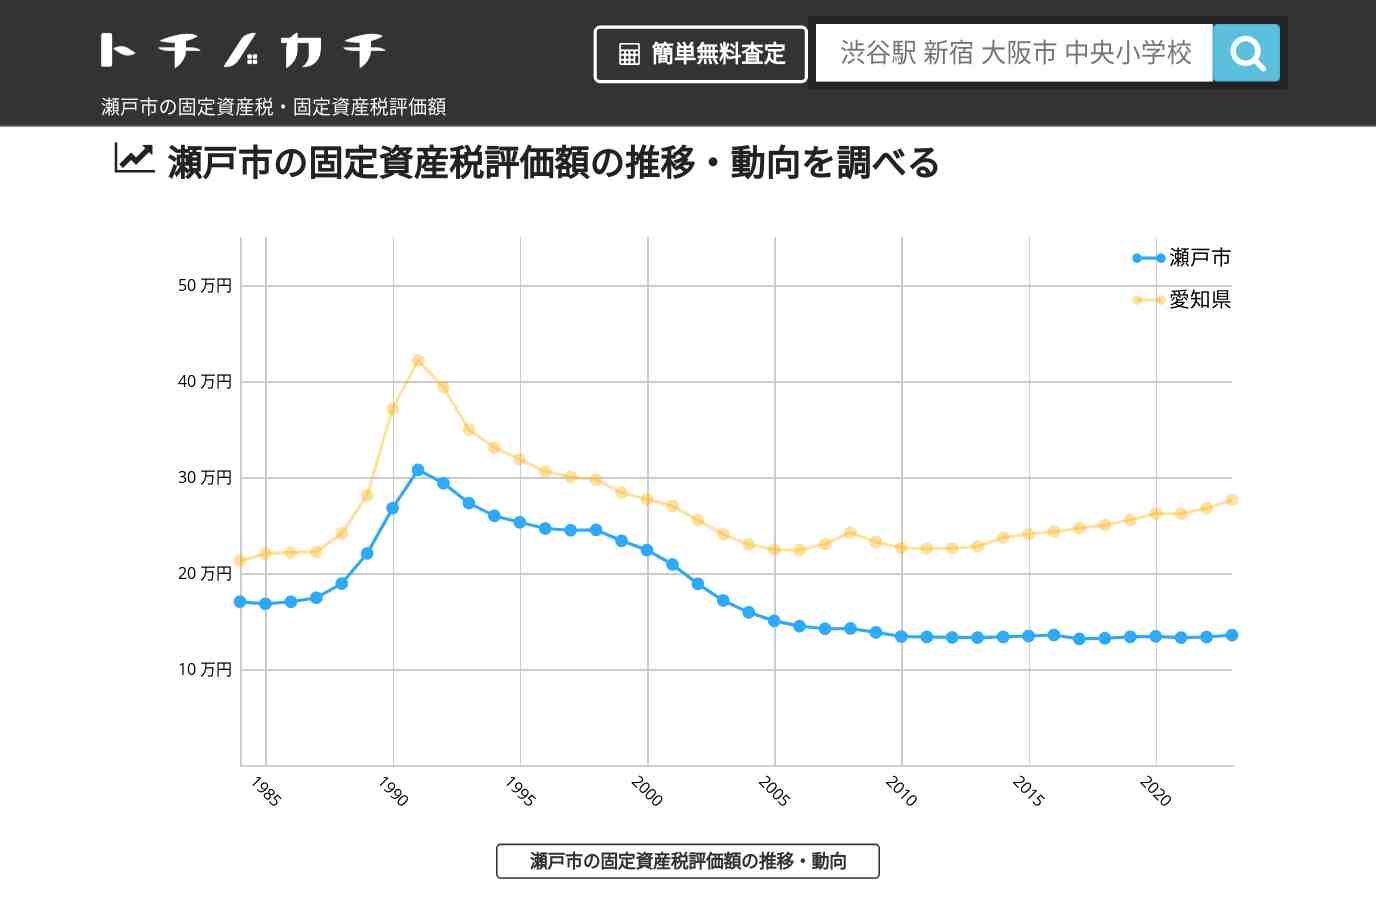 長根小学校(愛知県 瀬戸市)周辺の固定資産税・固定資産税評価額 | トチノカチ